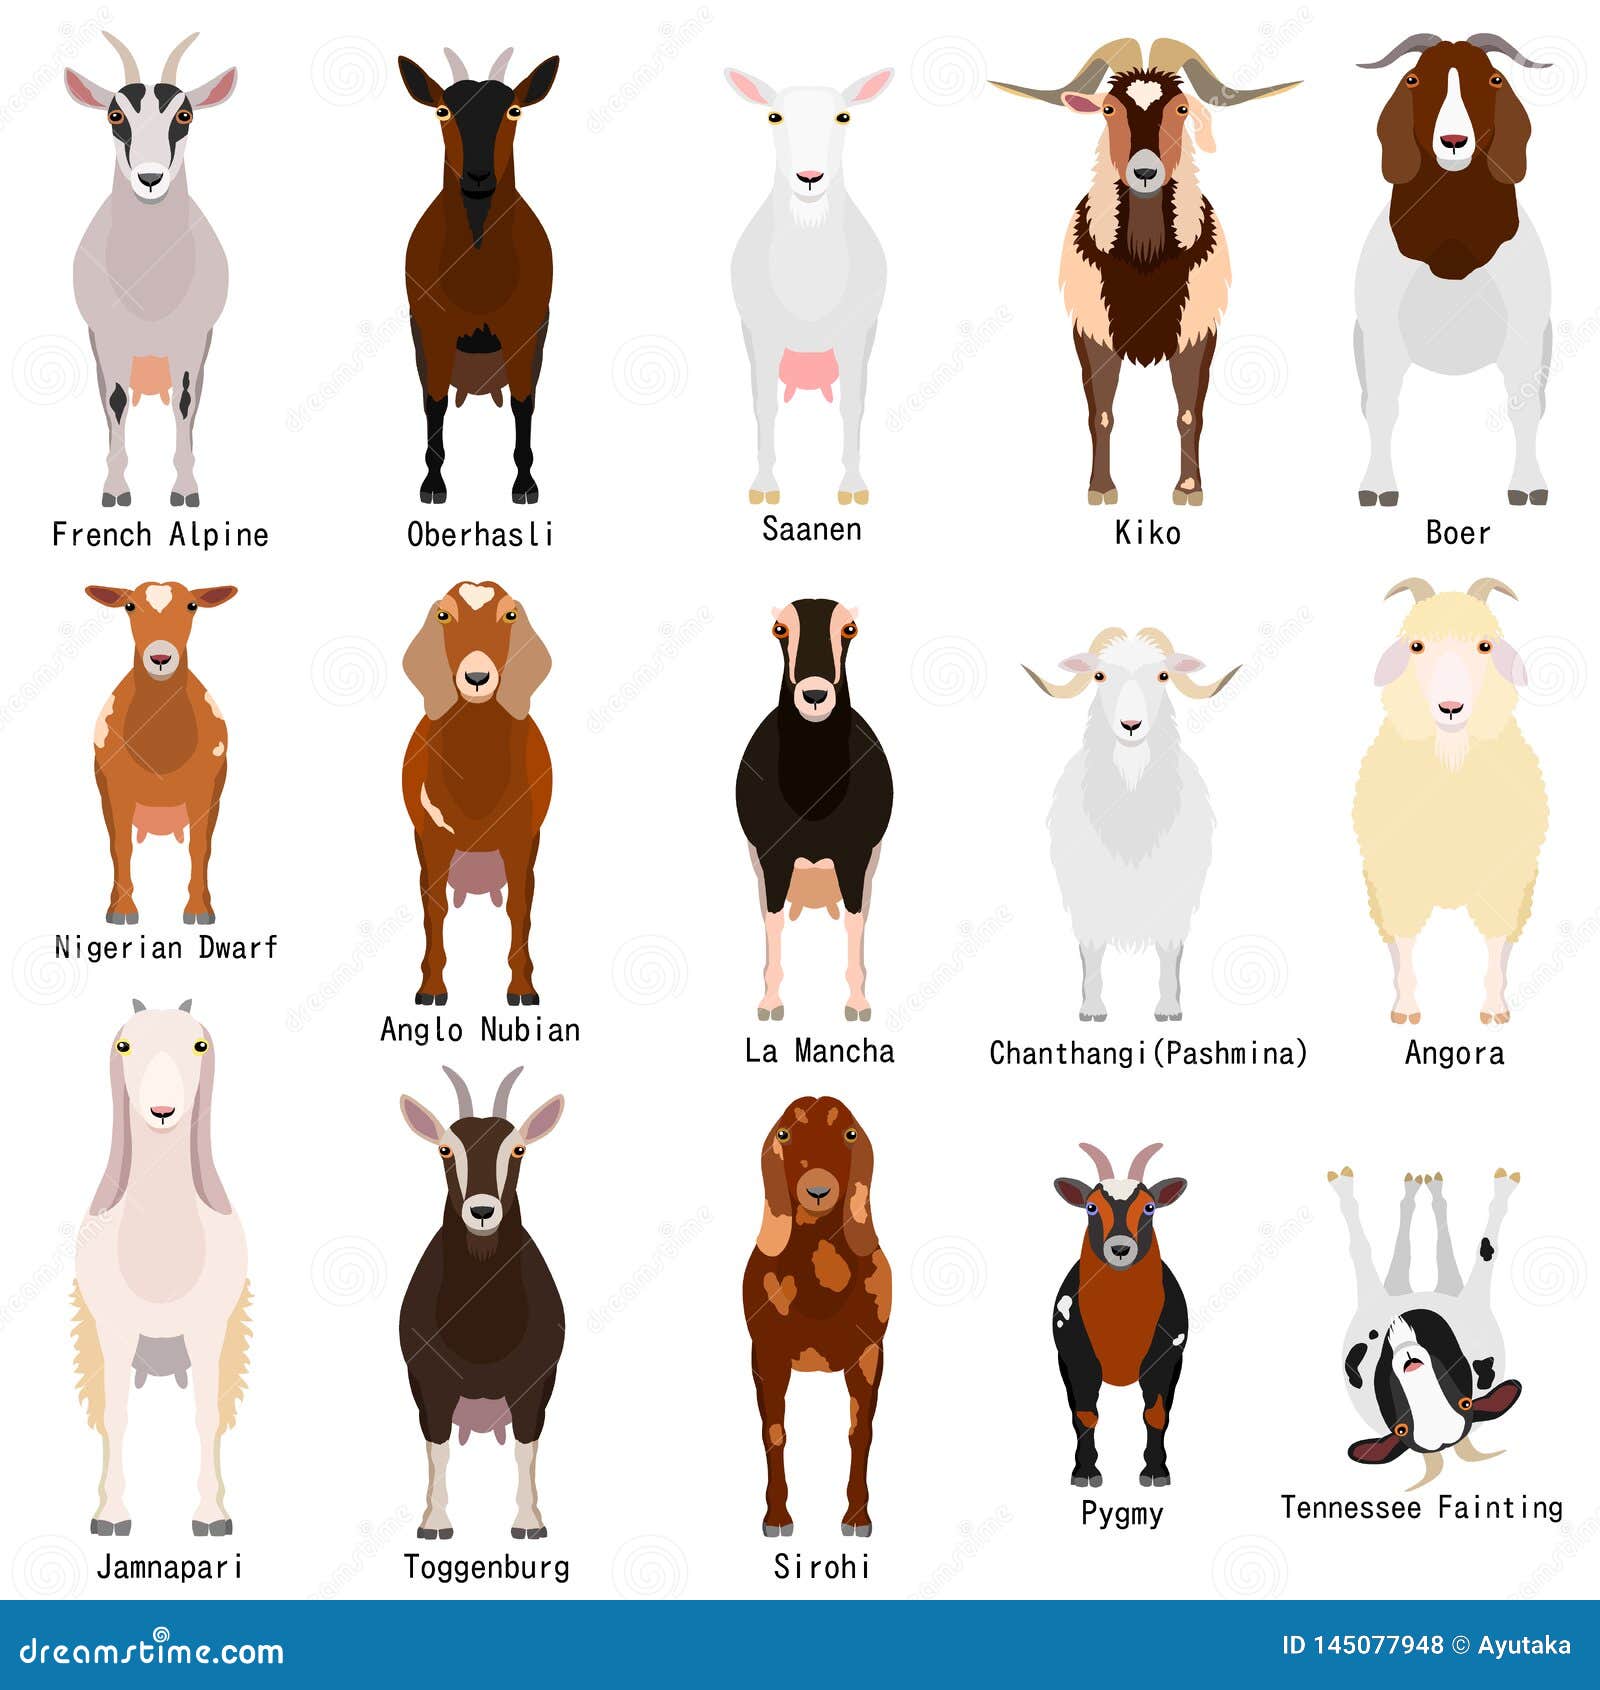 Кличка козленка 2. Имя для козлёнка. Имя имена коз. Имена кощлеека. Клички для козы девочки.